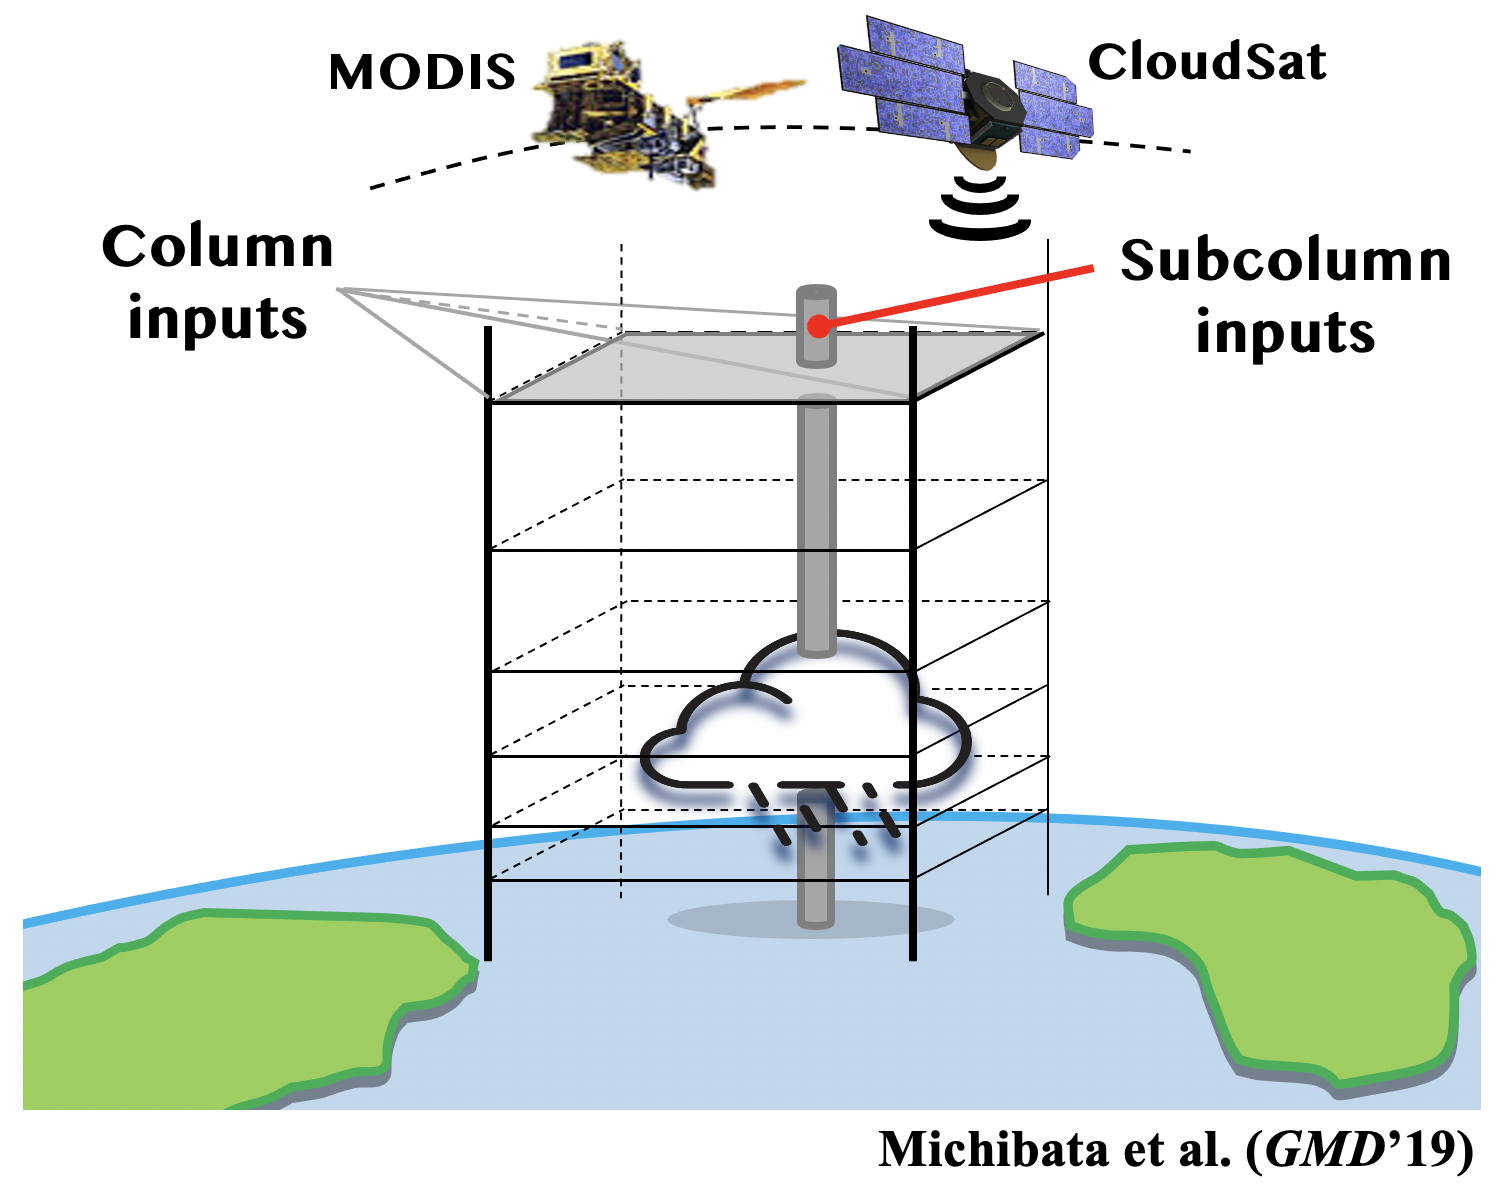 衛星シミュレータの概念図。数値気候モデルの100km格子にサブカラムを作り、雲ピクセルスケールで衛星センサーとの比較を行う。